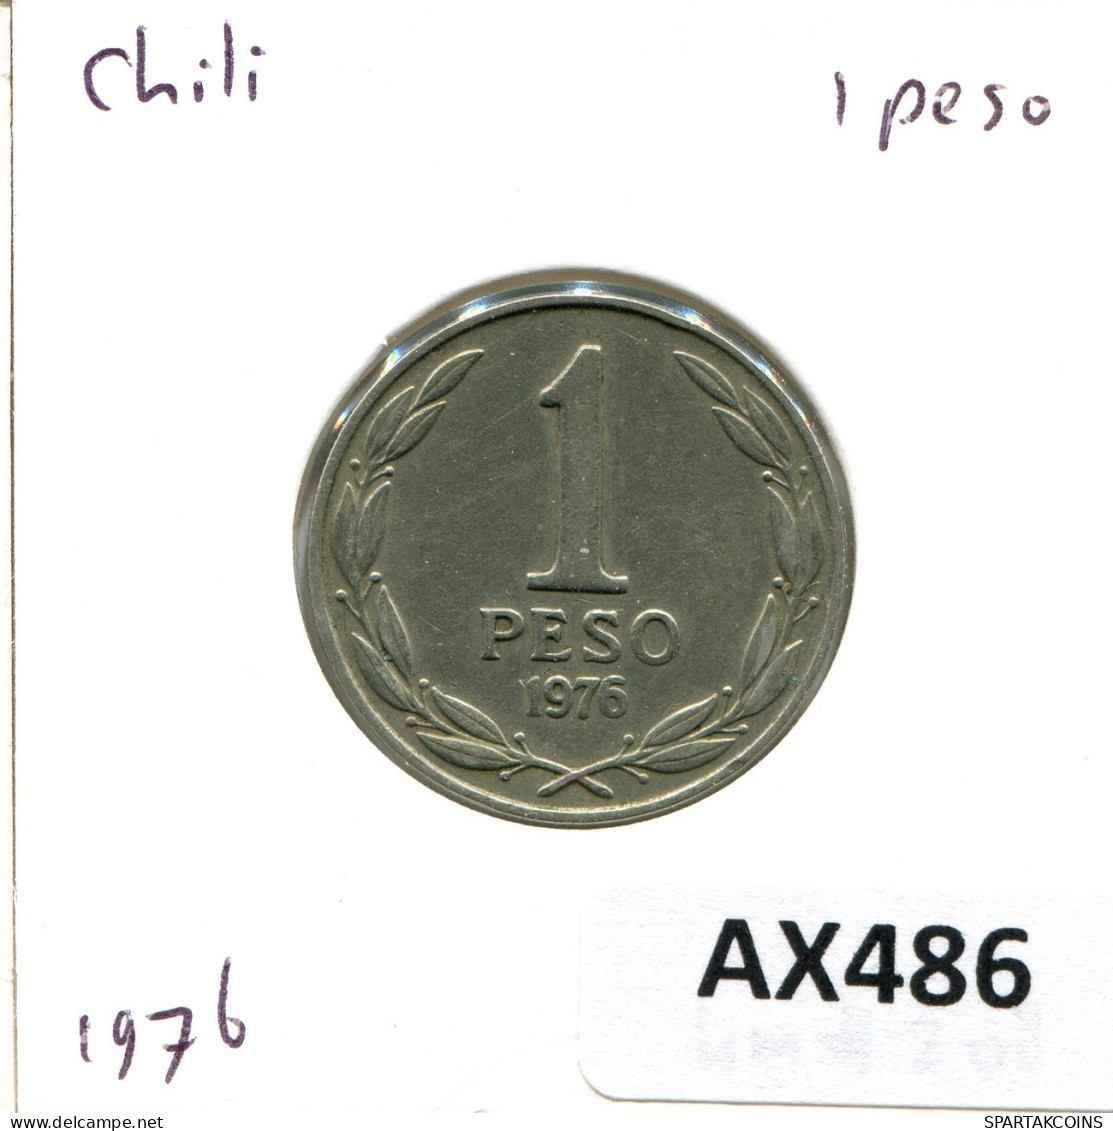 1 PESO 1976 CHILE Coin #AX486.U.A - Cile